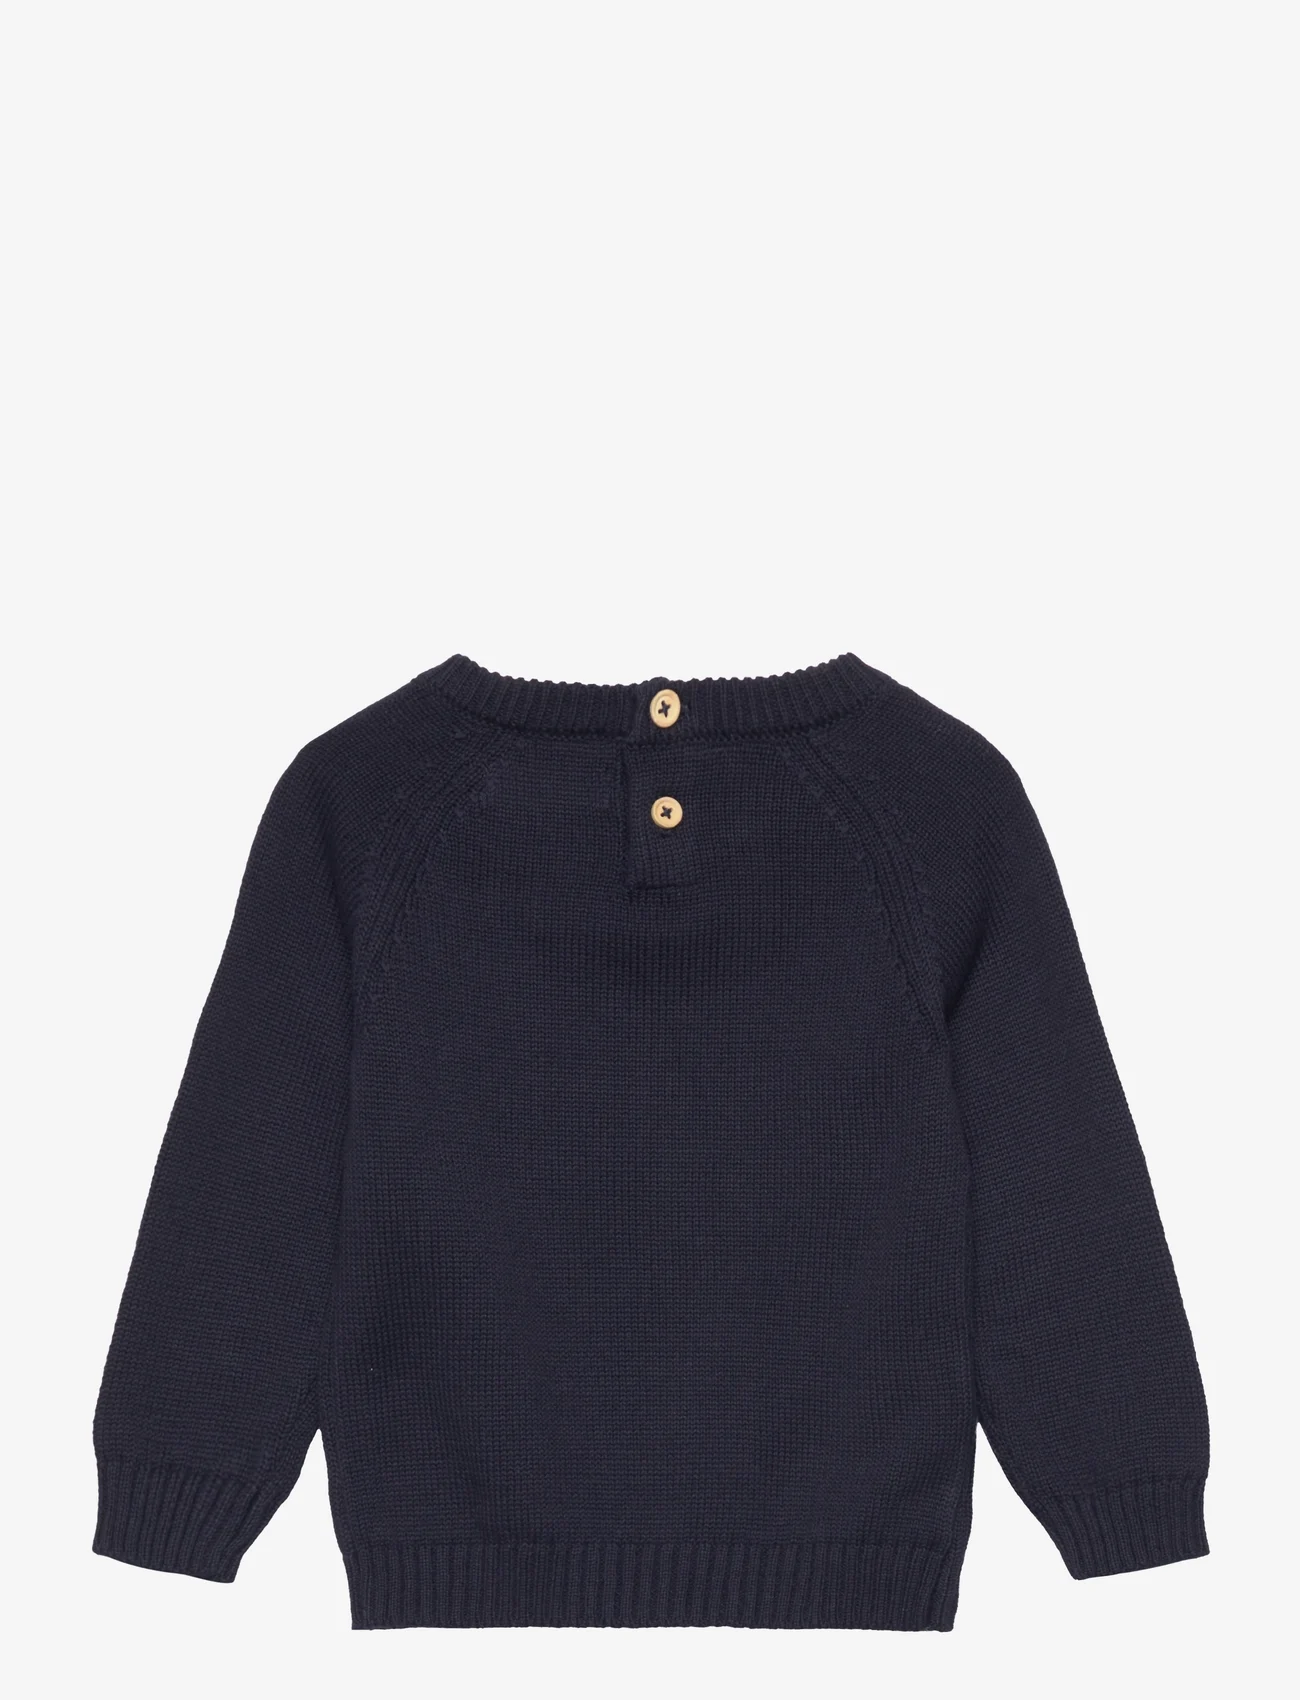 Mango - Knit cotton sweater - tröjor - navy - 1